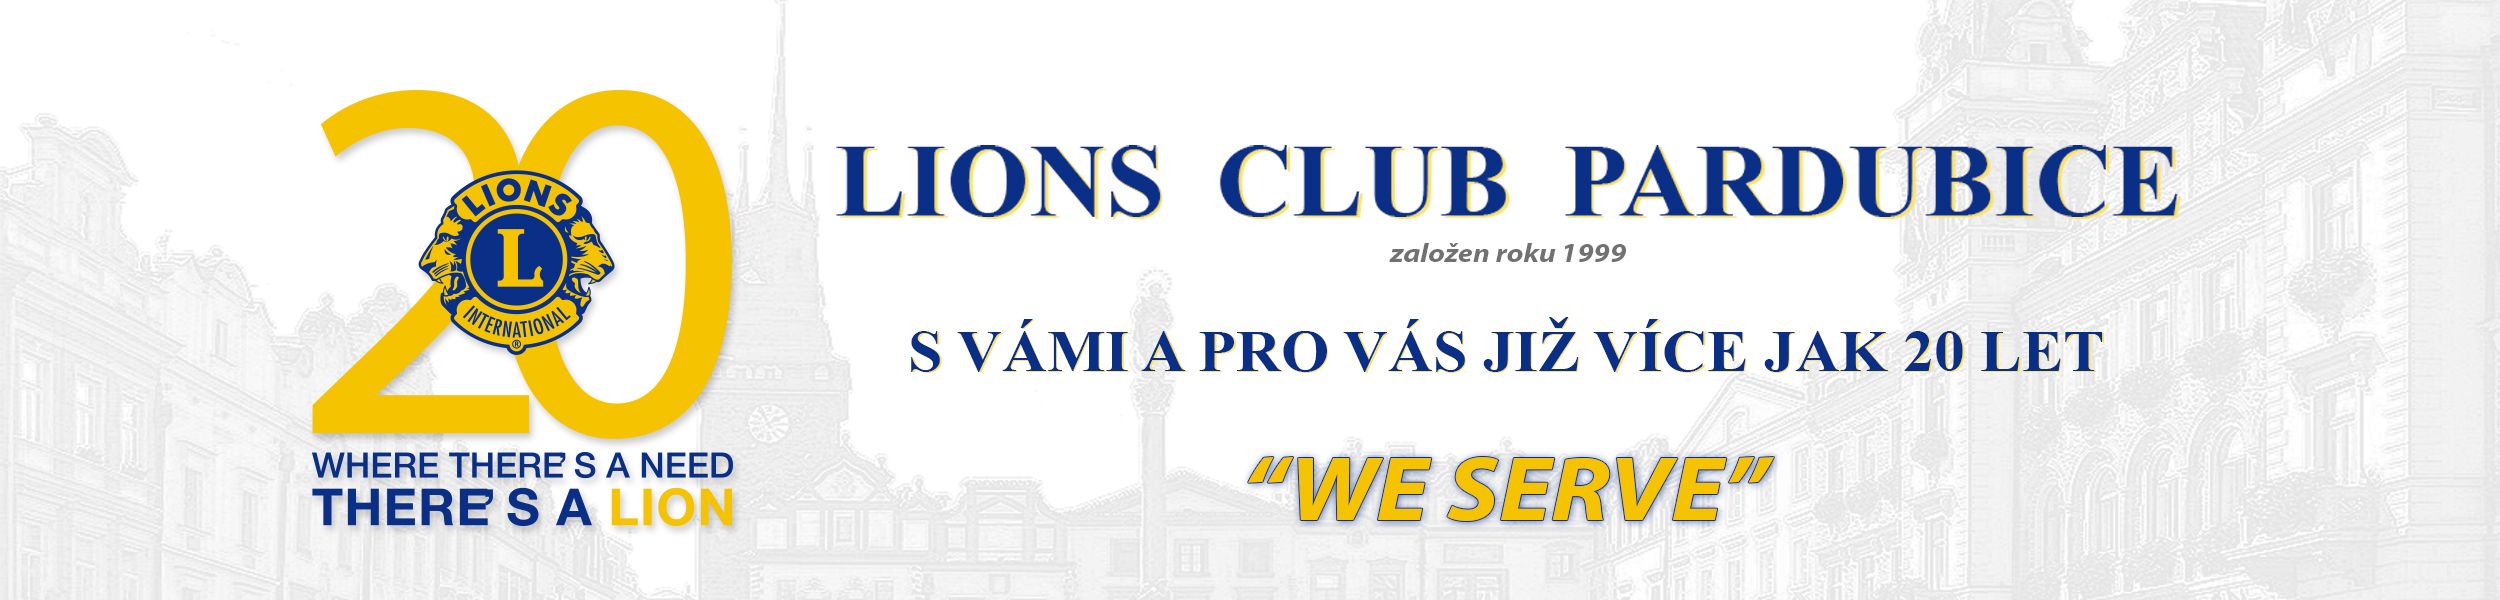 Lions club 20